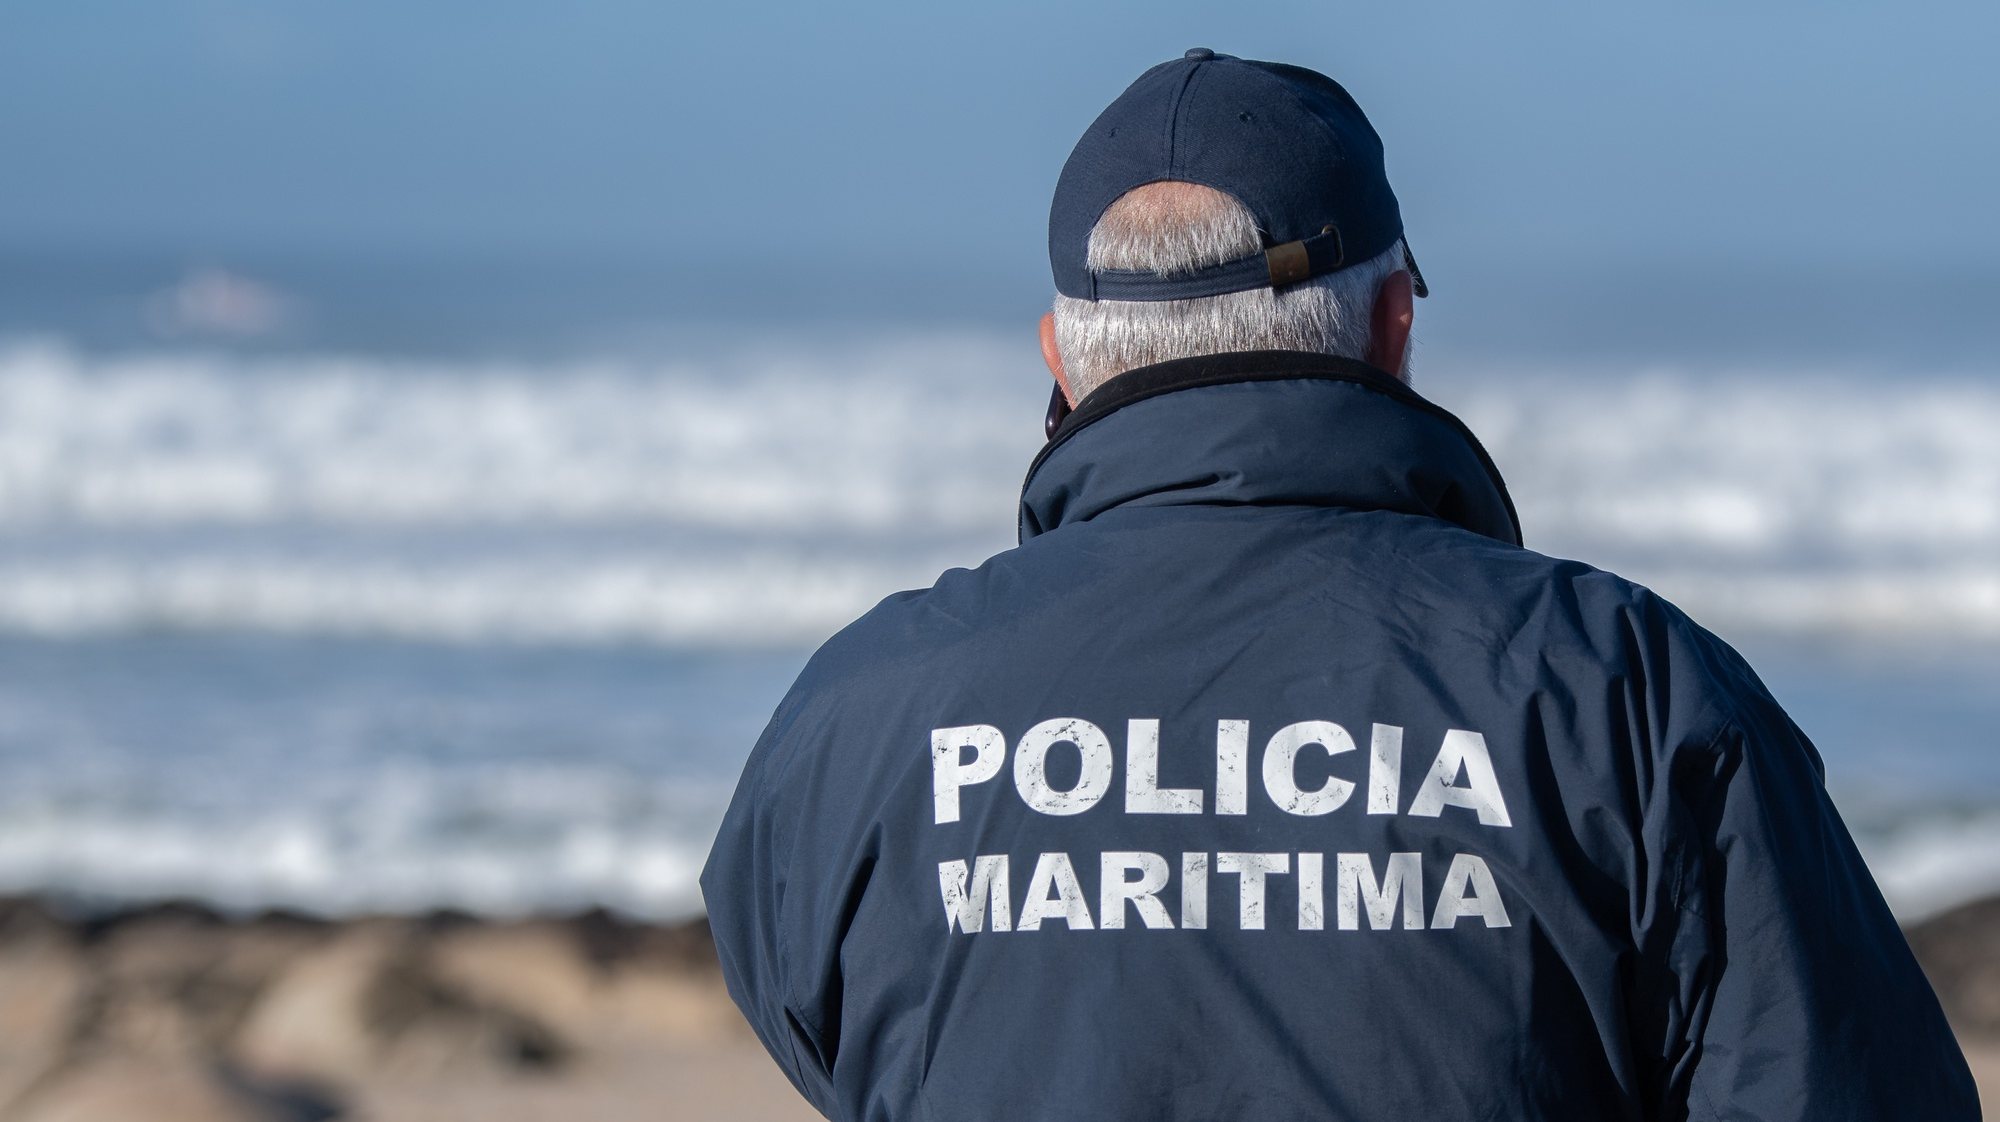 Polícia Marítima aguarda por autorização para poder utilizar as bodycams